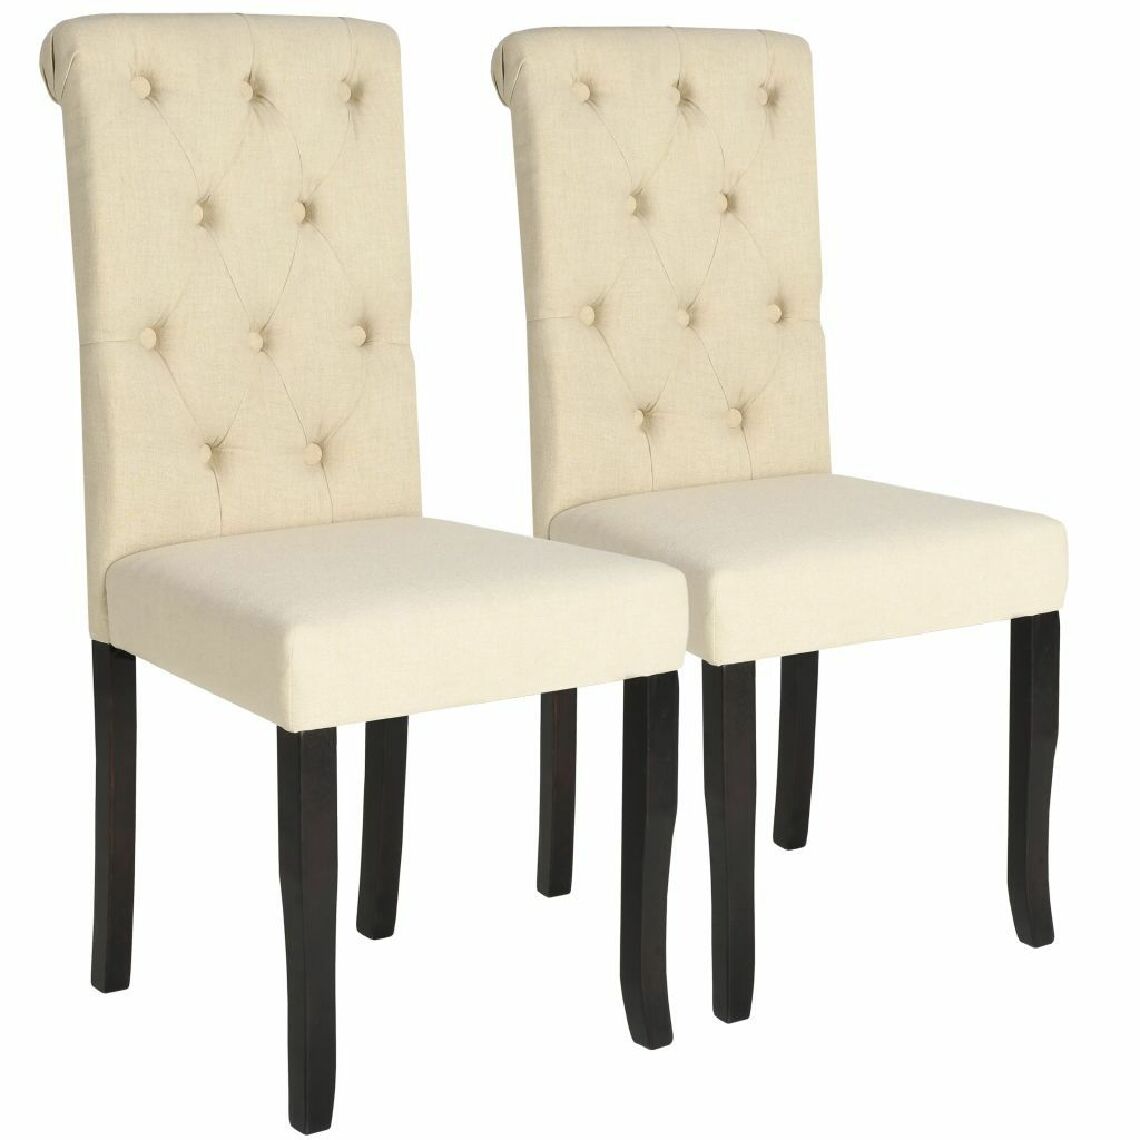 Helloshop26 - Lot de deux chaises de salle à manger bois massif couleur crème 1902231 - Chaises